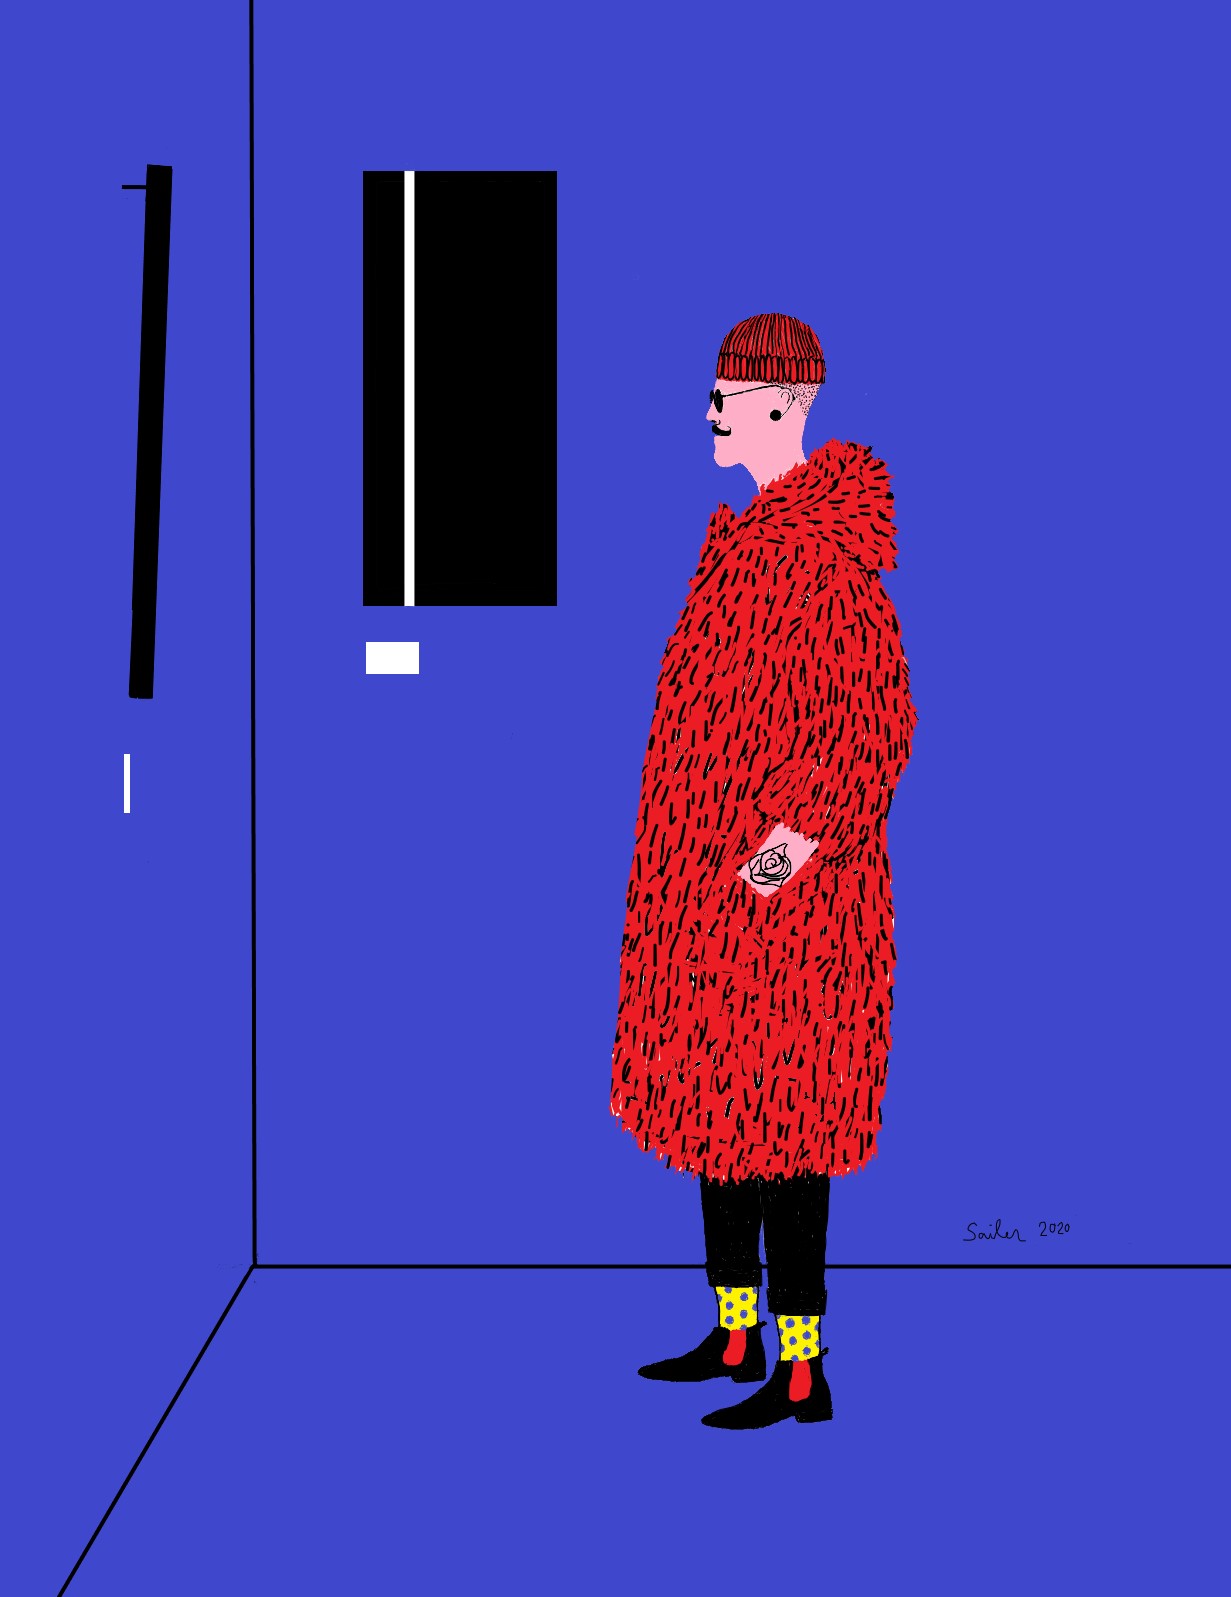 Artist in a Red Fur Coat